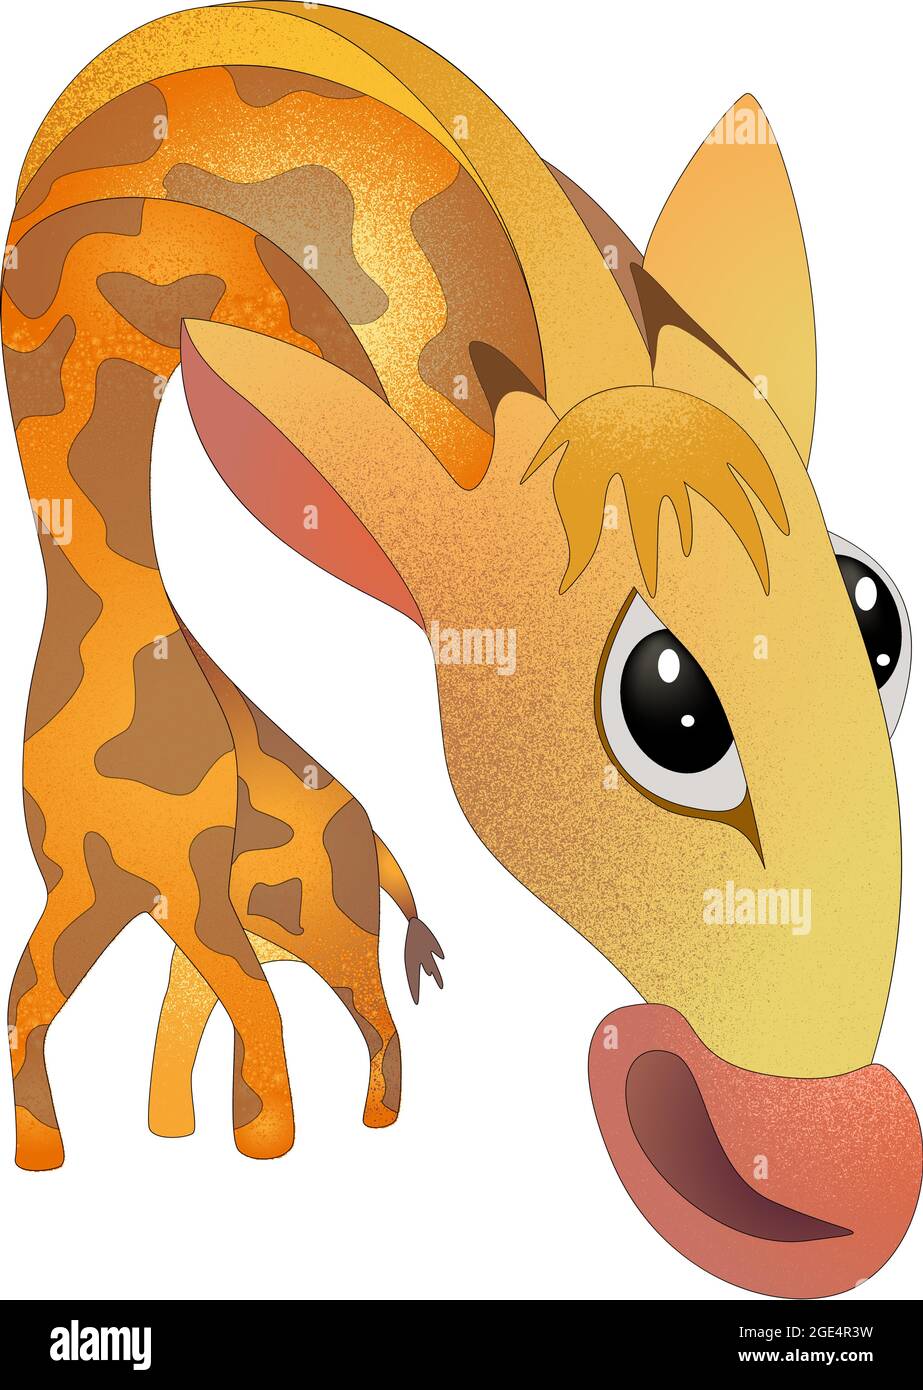 Immagine vettoriale di una giraffa in una posa scomoda curva da un arco con un aspetto perplesso. Illustrazione Vettoriale